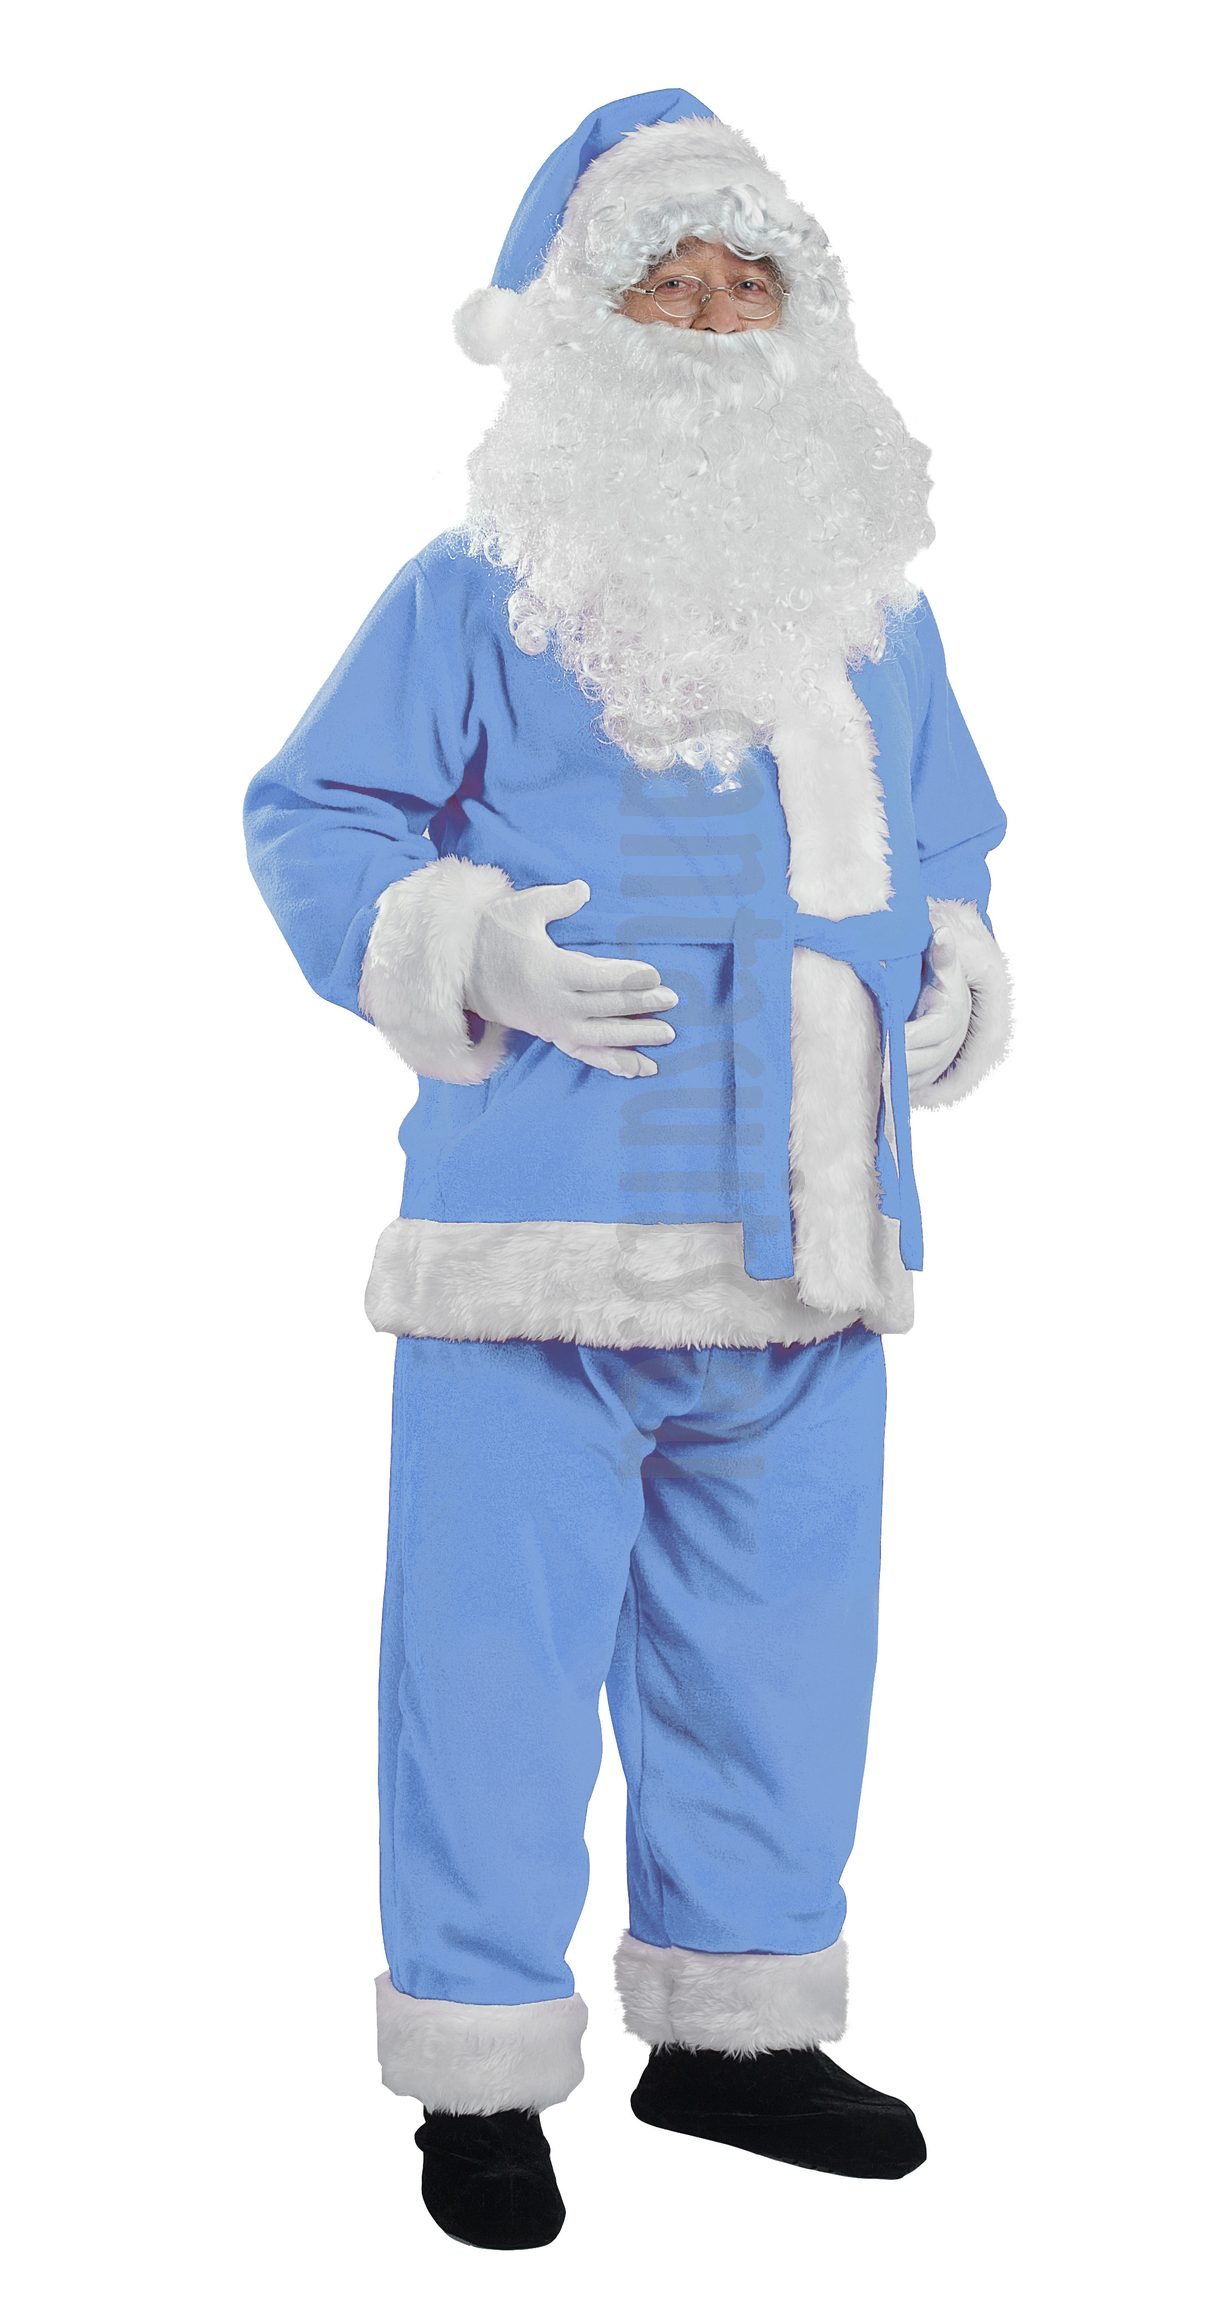 santa claus blue suit